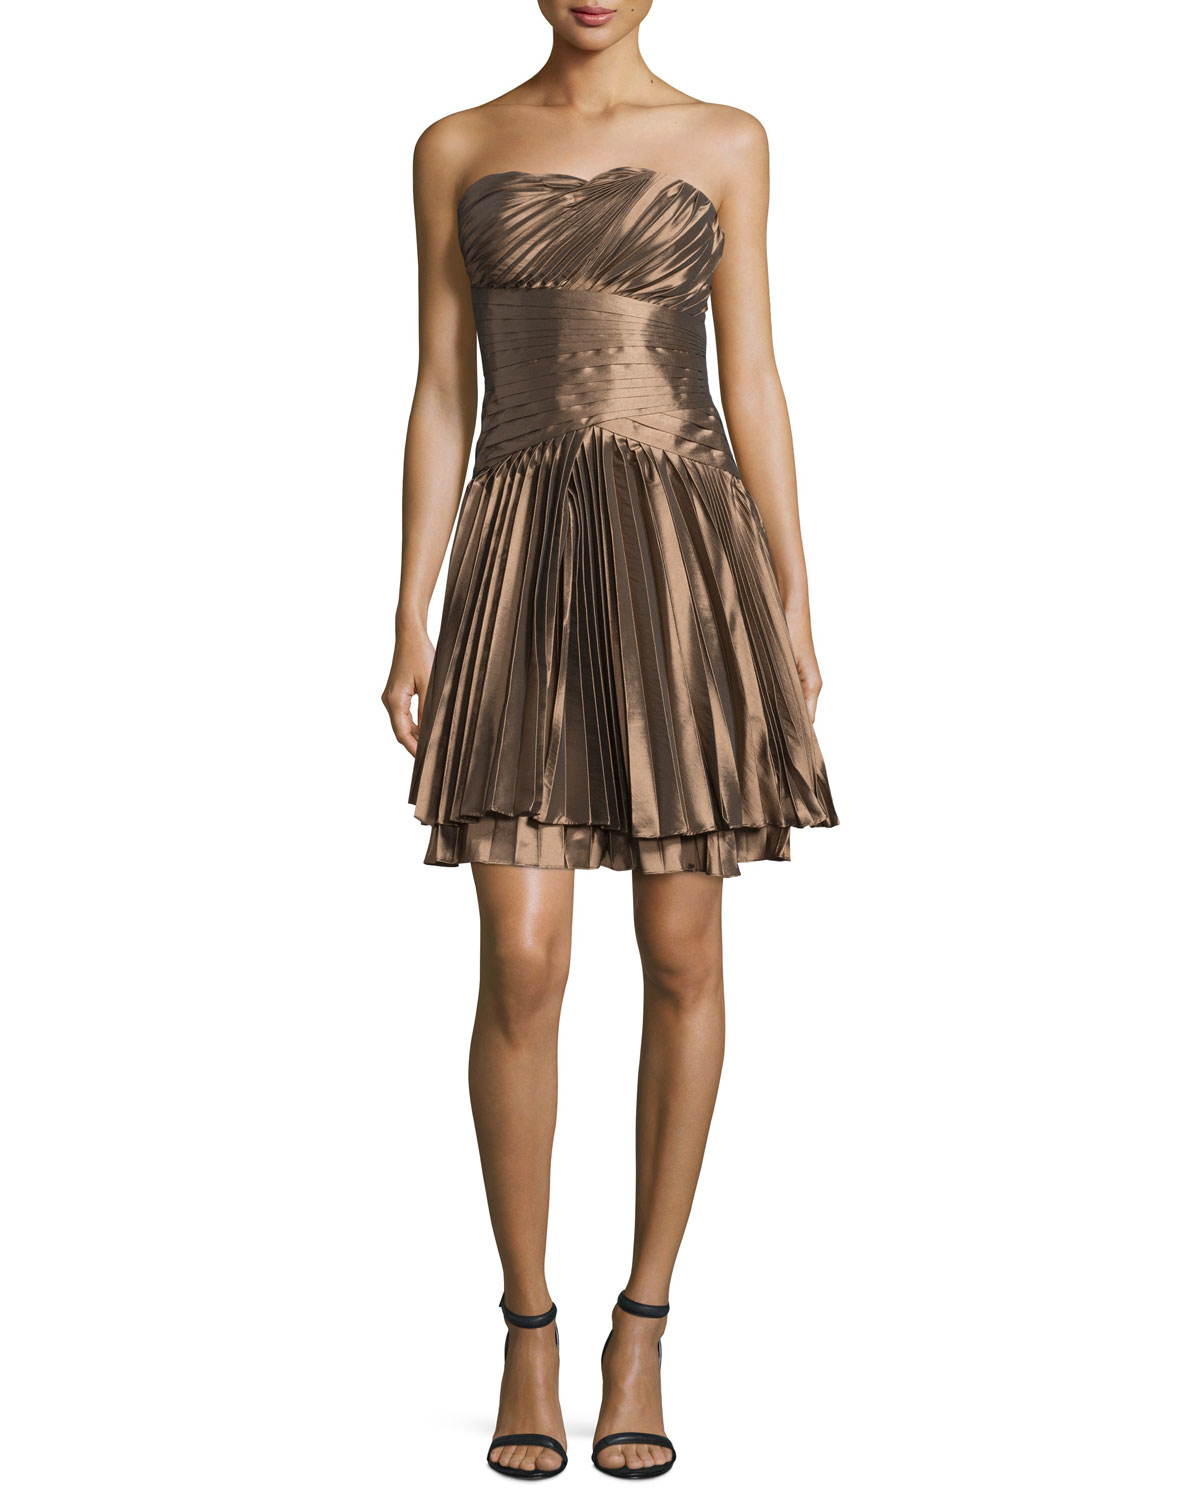 Bronze Metallic Dress : Trends For Fall